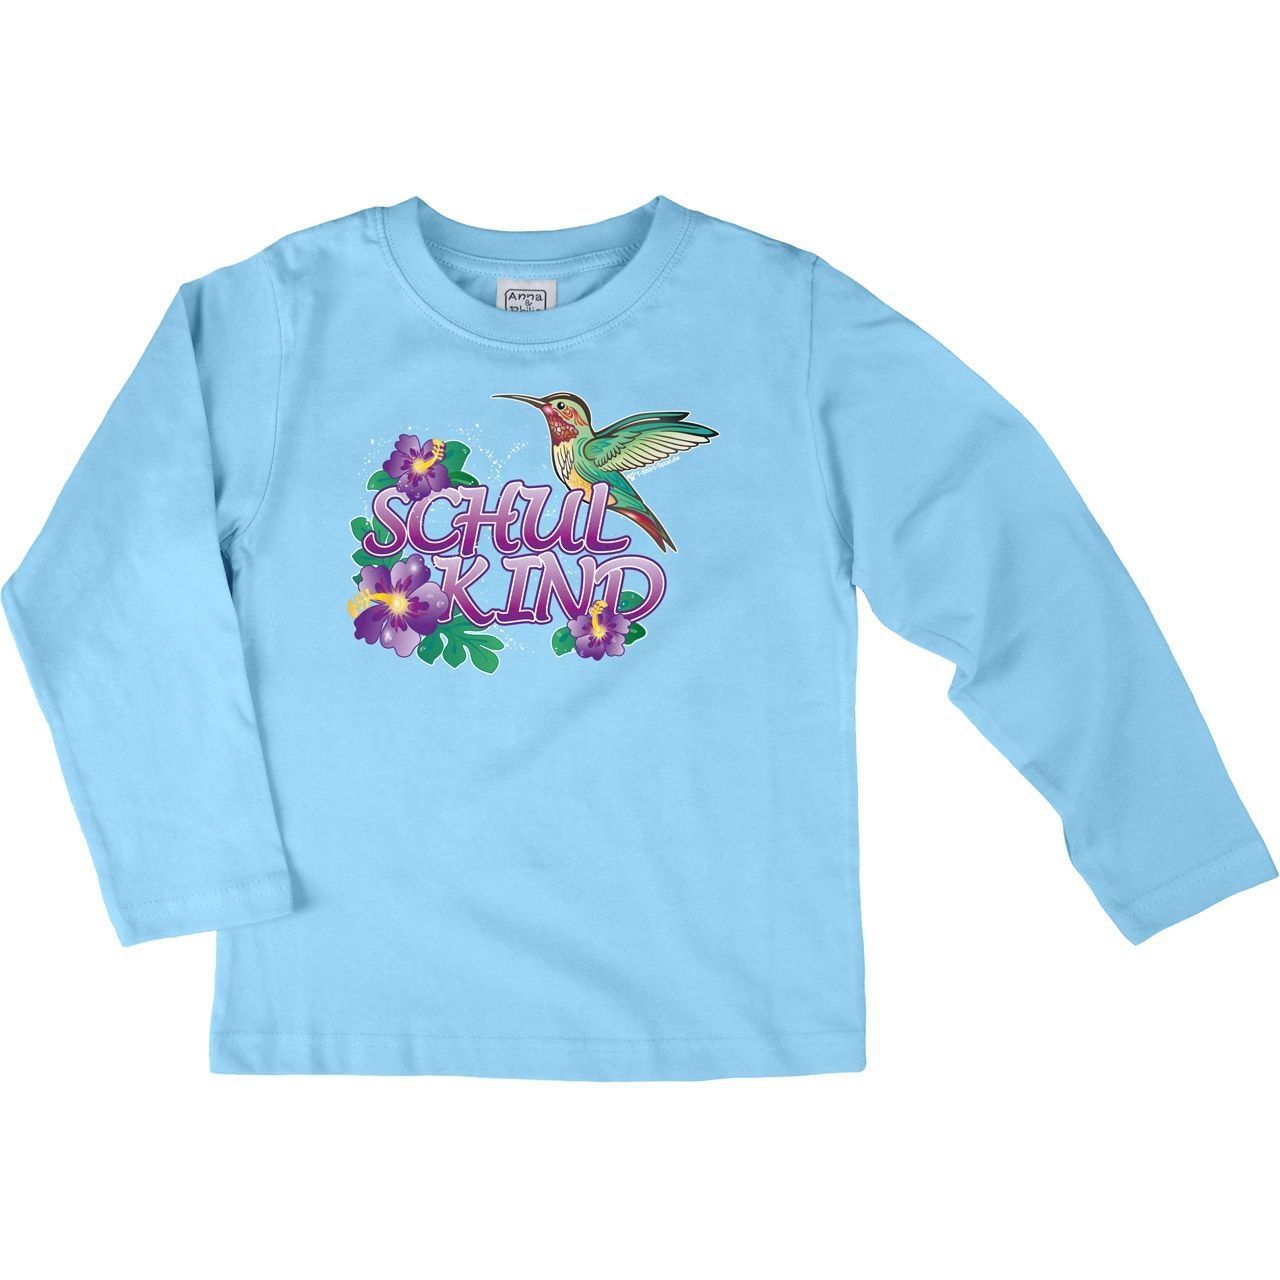 Schulkind Kolibri Kinder Langarm Shirt hellblau 134 / 140